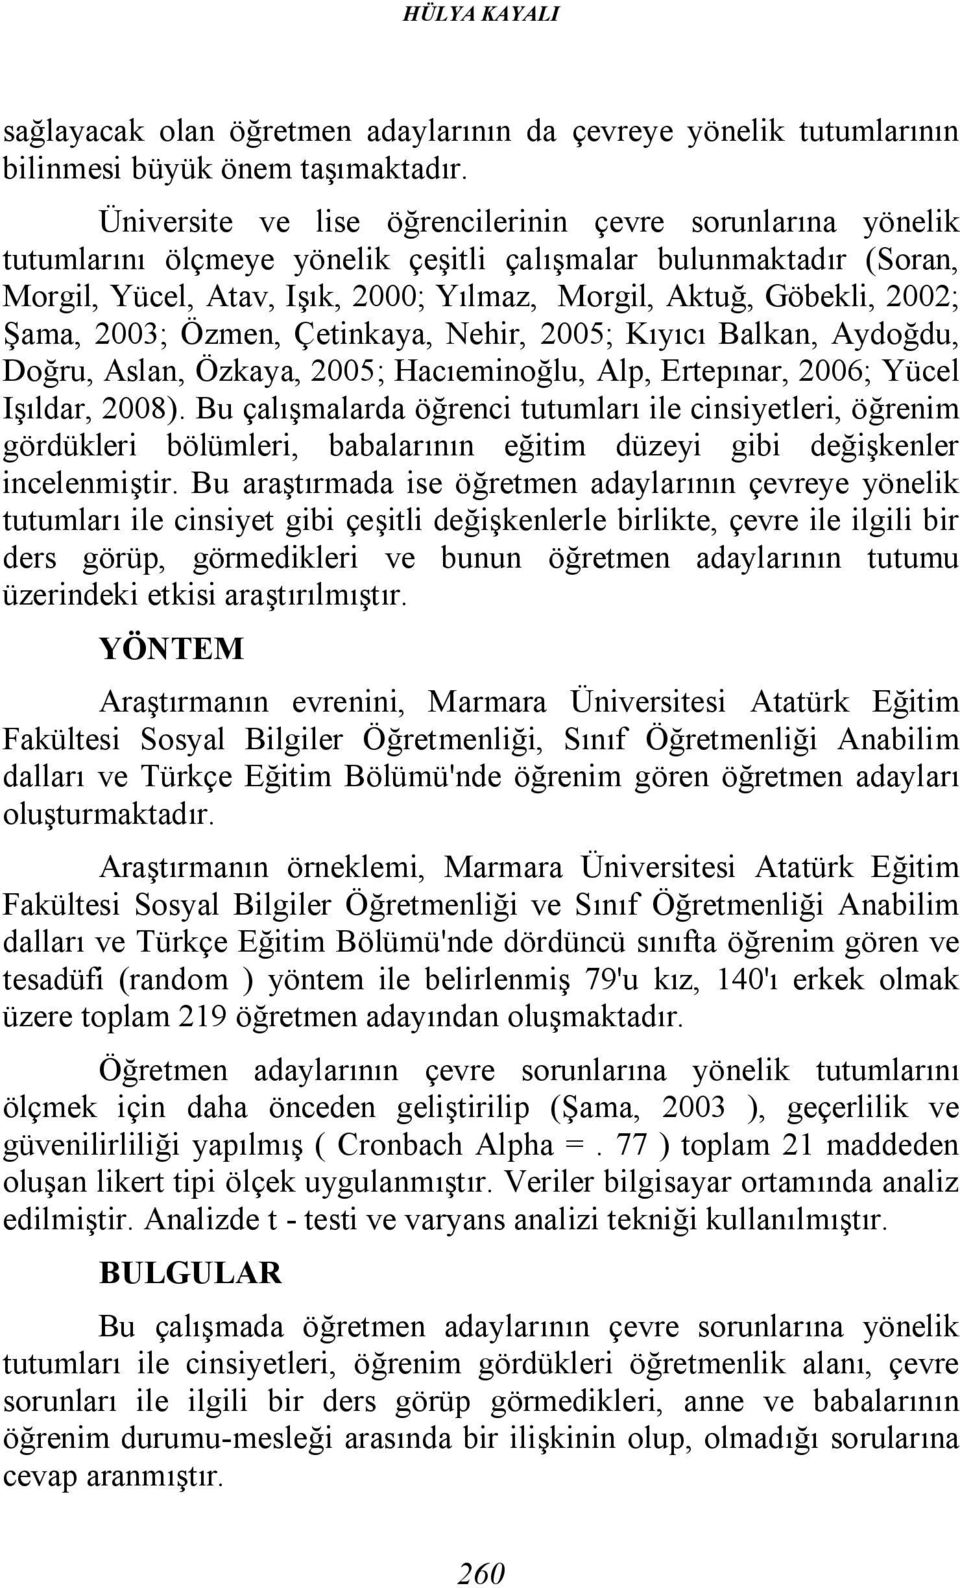 Şama, 2003; Özmen, Çetinkaya, Nehir, 2005; Kıyıcı Balkan, Aydoğdu, Doğru, Aslan, Özkaya, 2005; Hacıeminoğlu, Alp, Ertepınar, 2006; Yücel Işıldar, 2008).